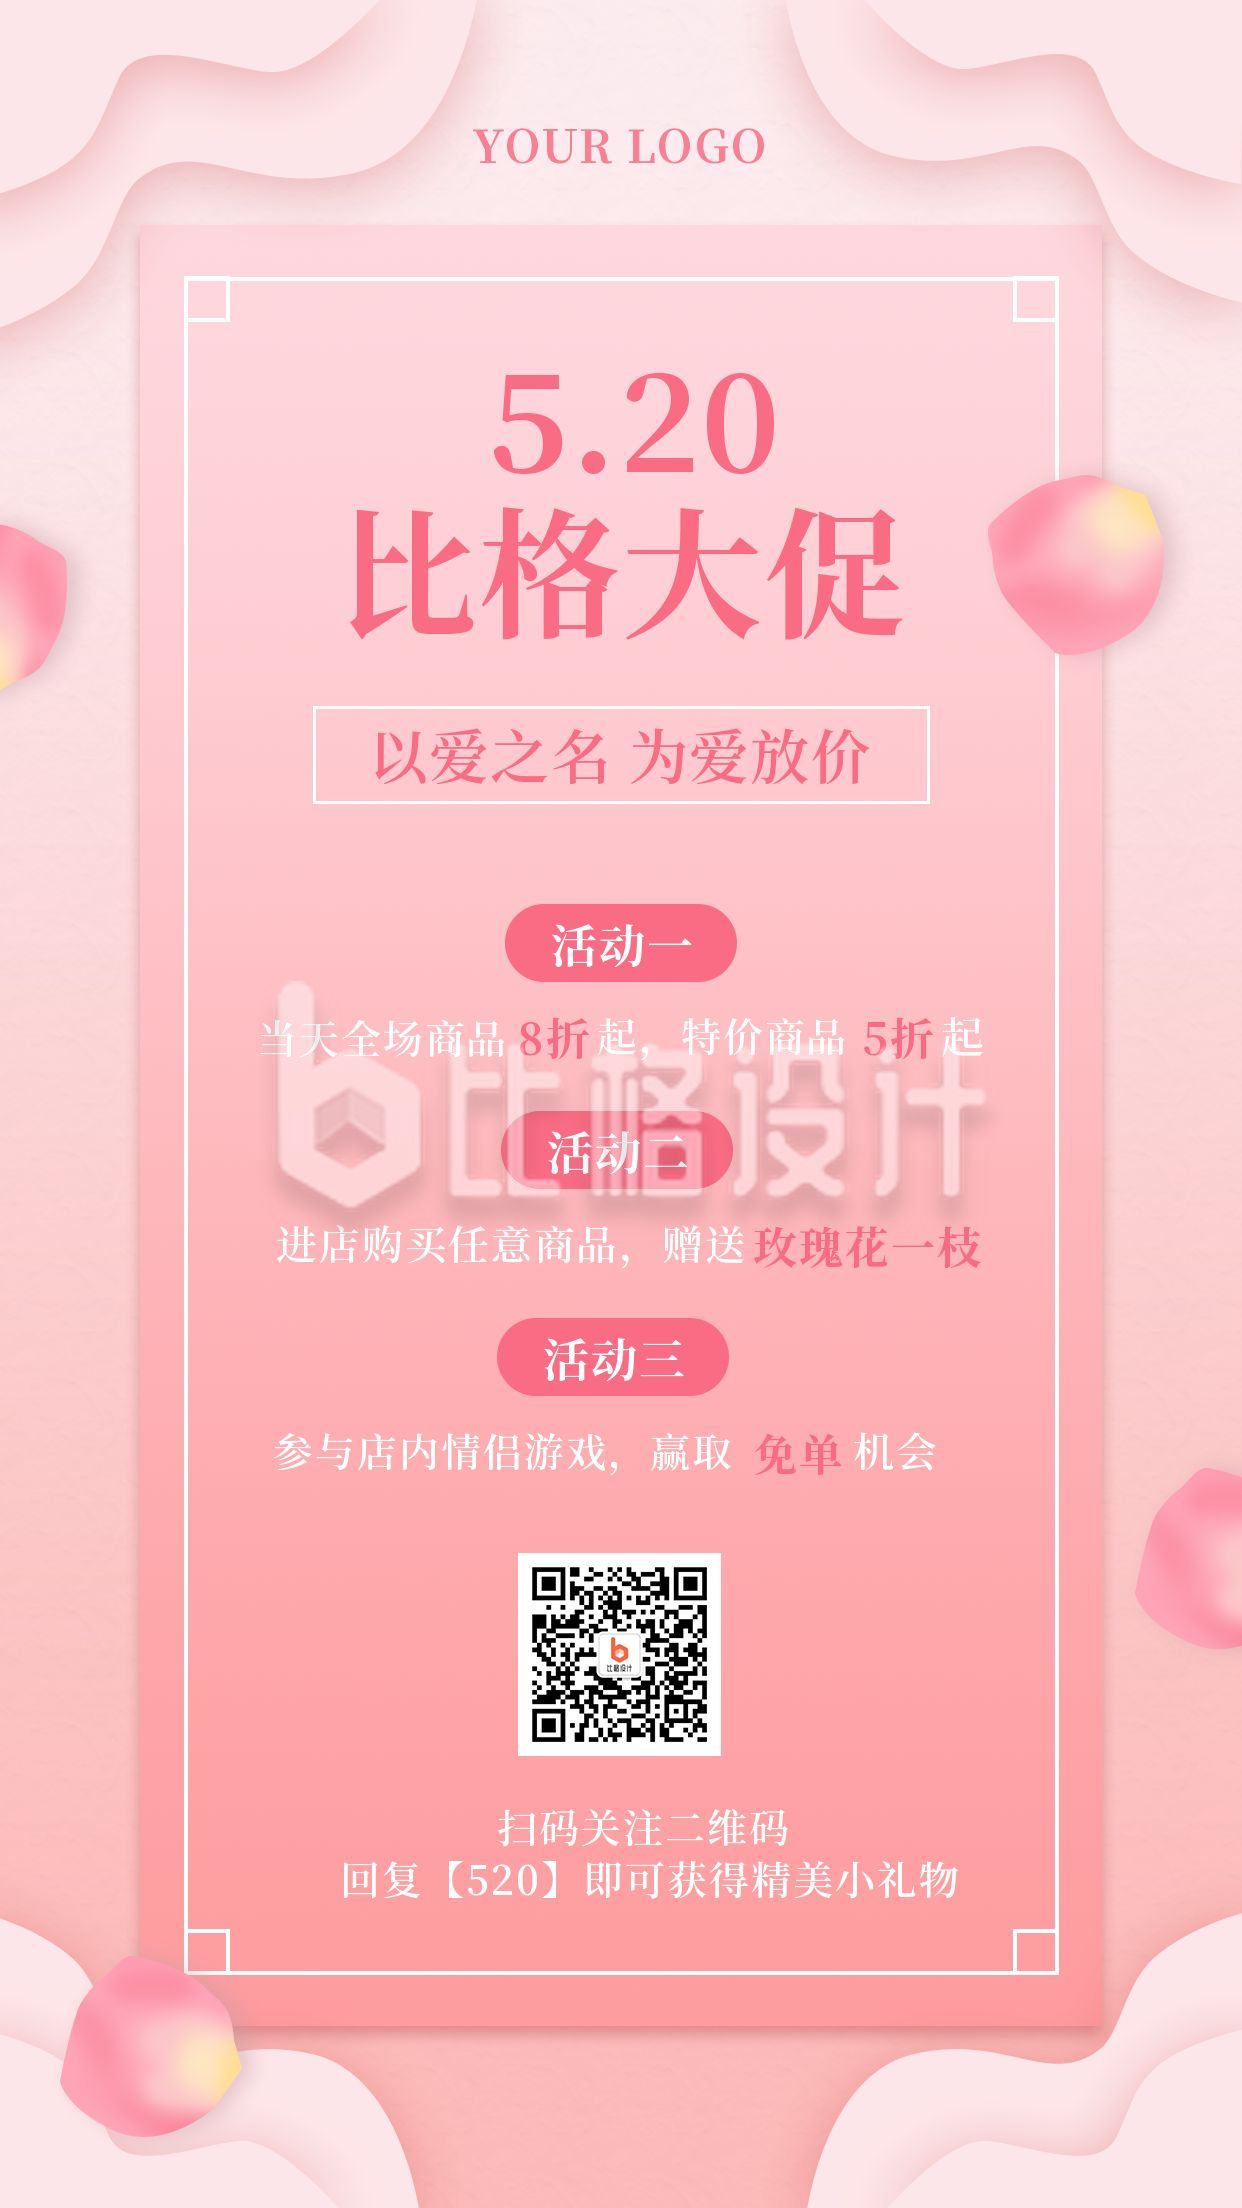 520情人节节日营销宣传活动手机海报